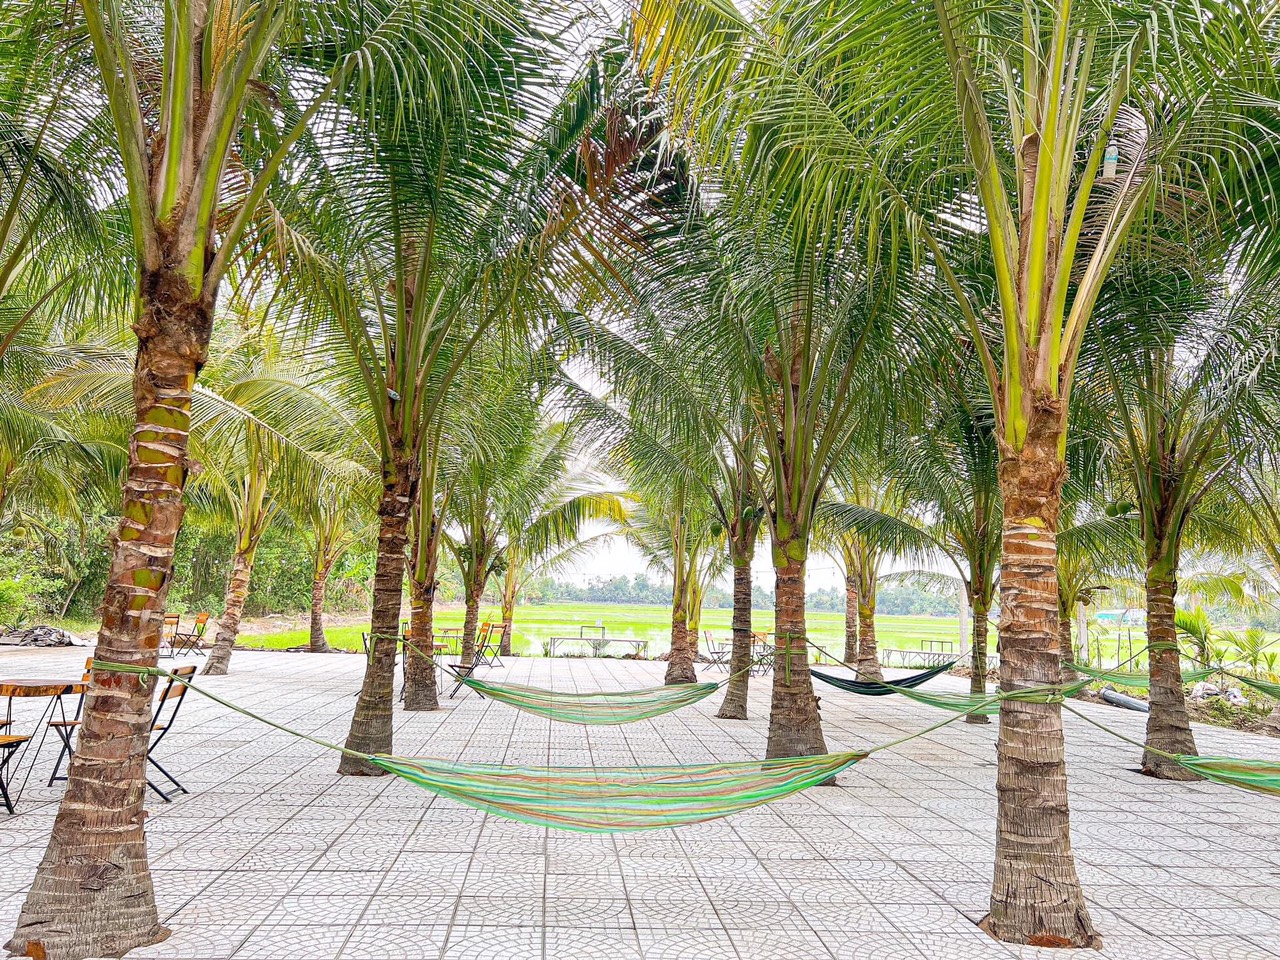 Quán cà phê dừa xanh mát với hơn 300 cây dừa xiêm, xung quanh là ruộng lúa bao la. Ảnh: Tạ Quang